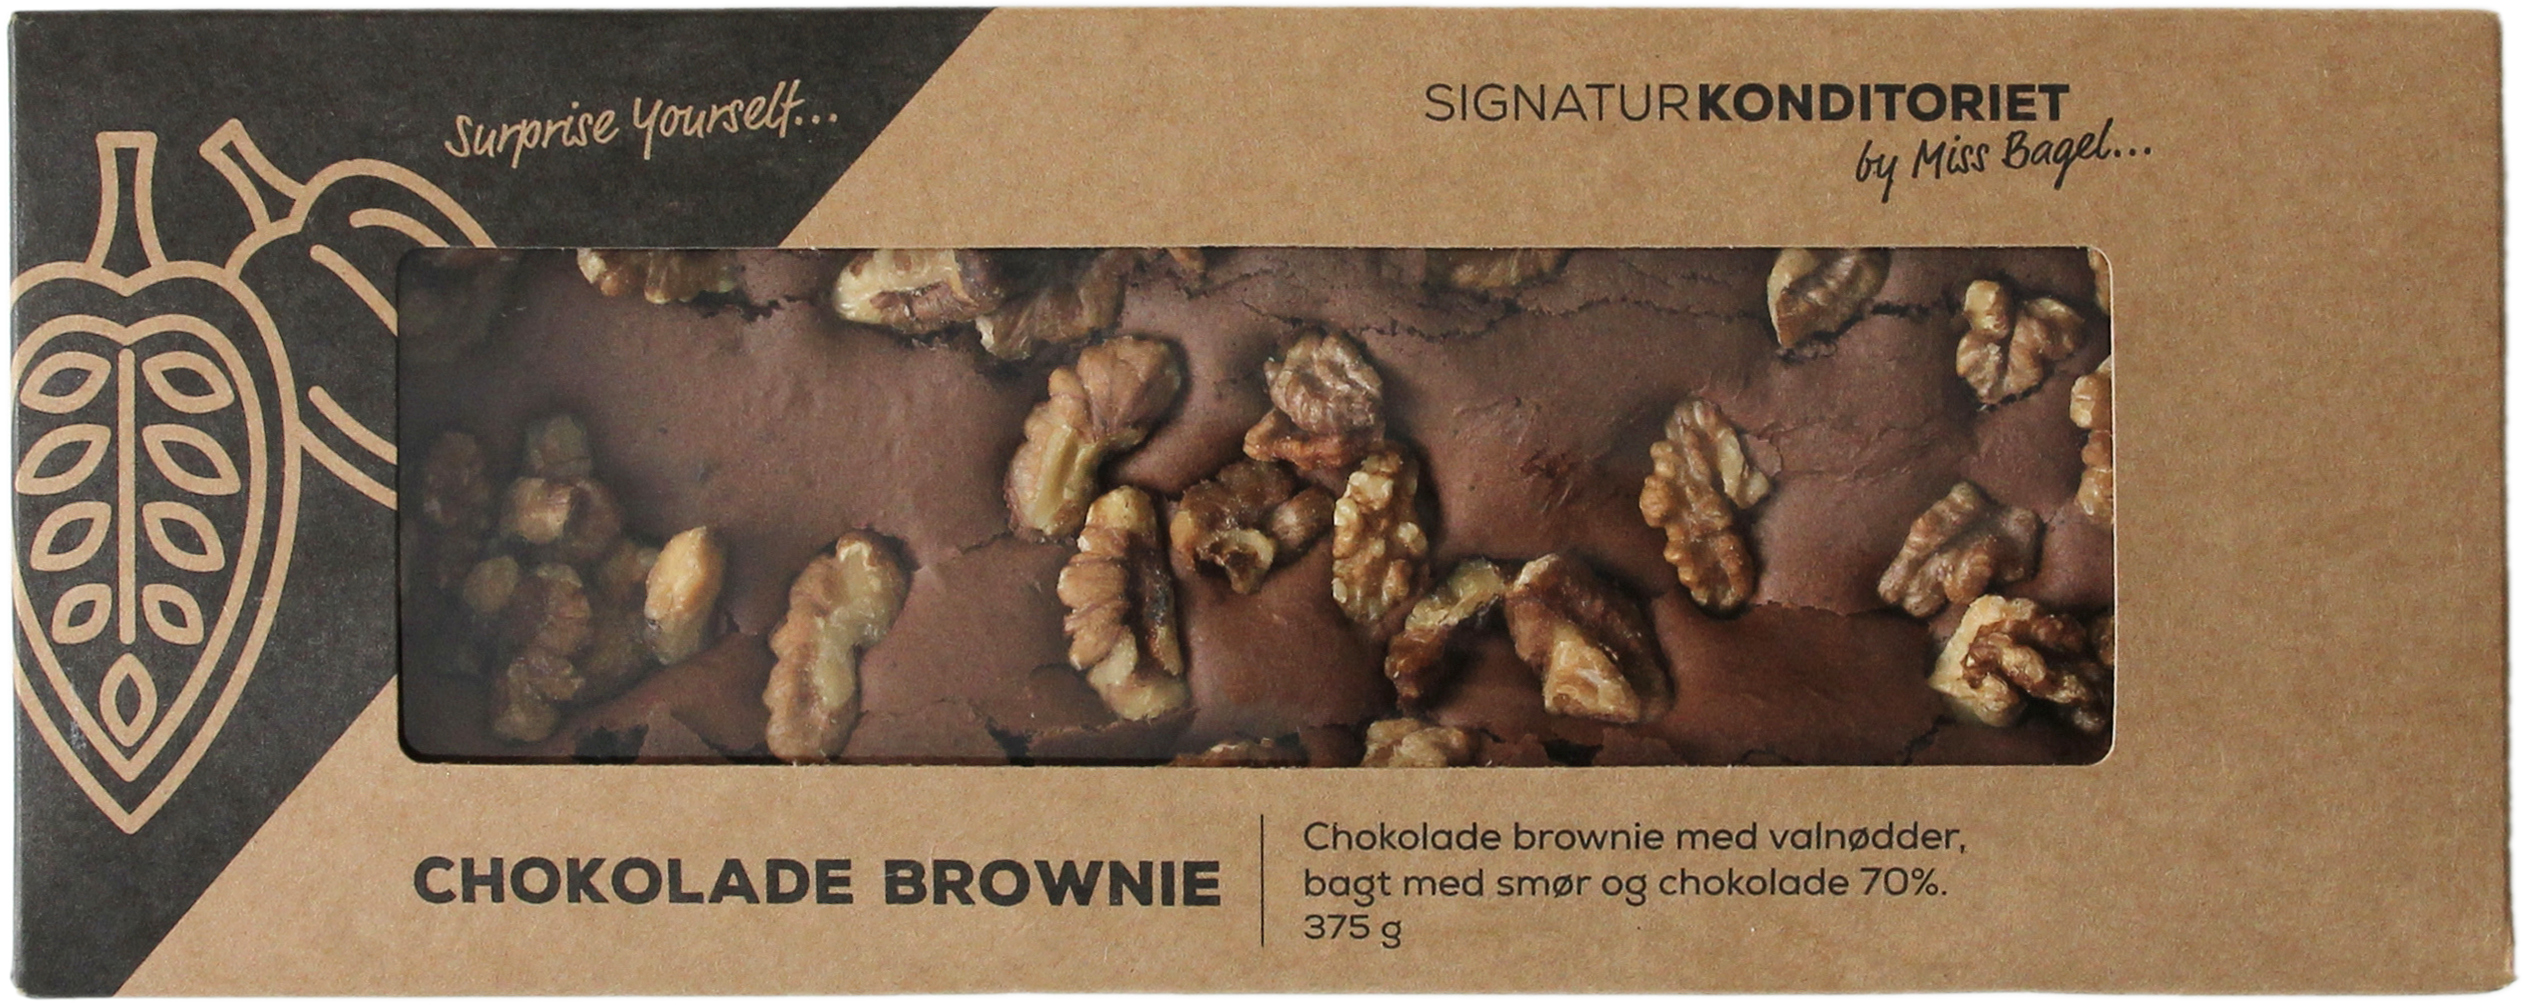 Chokolade brownie i form